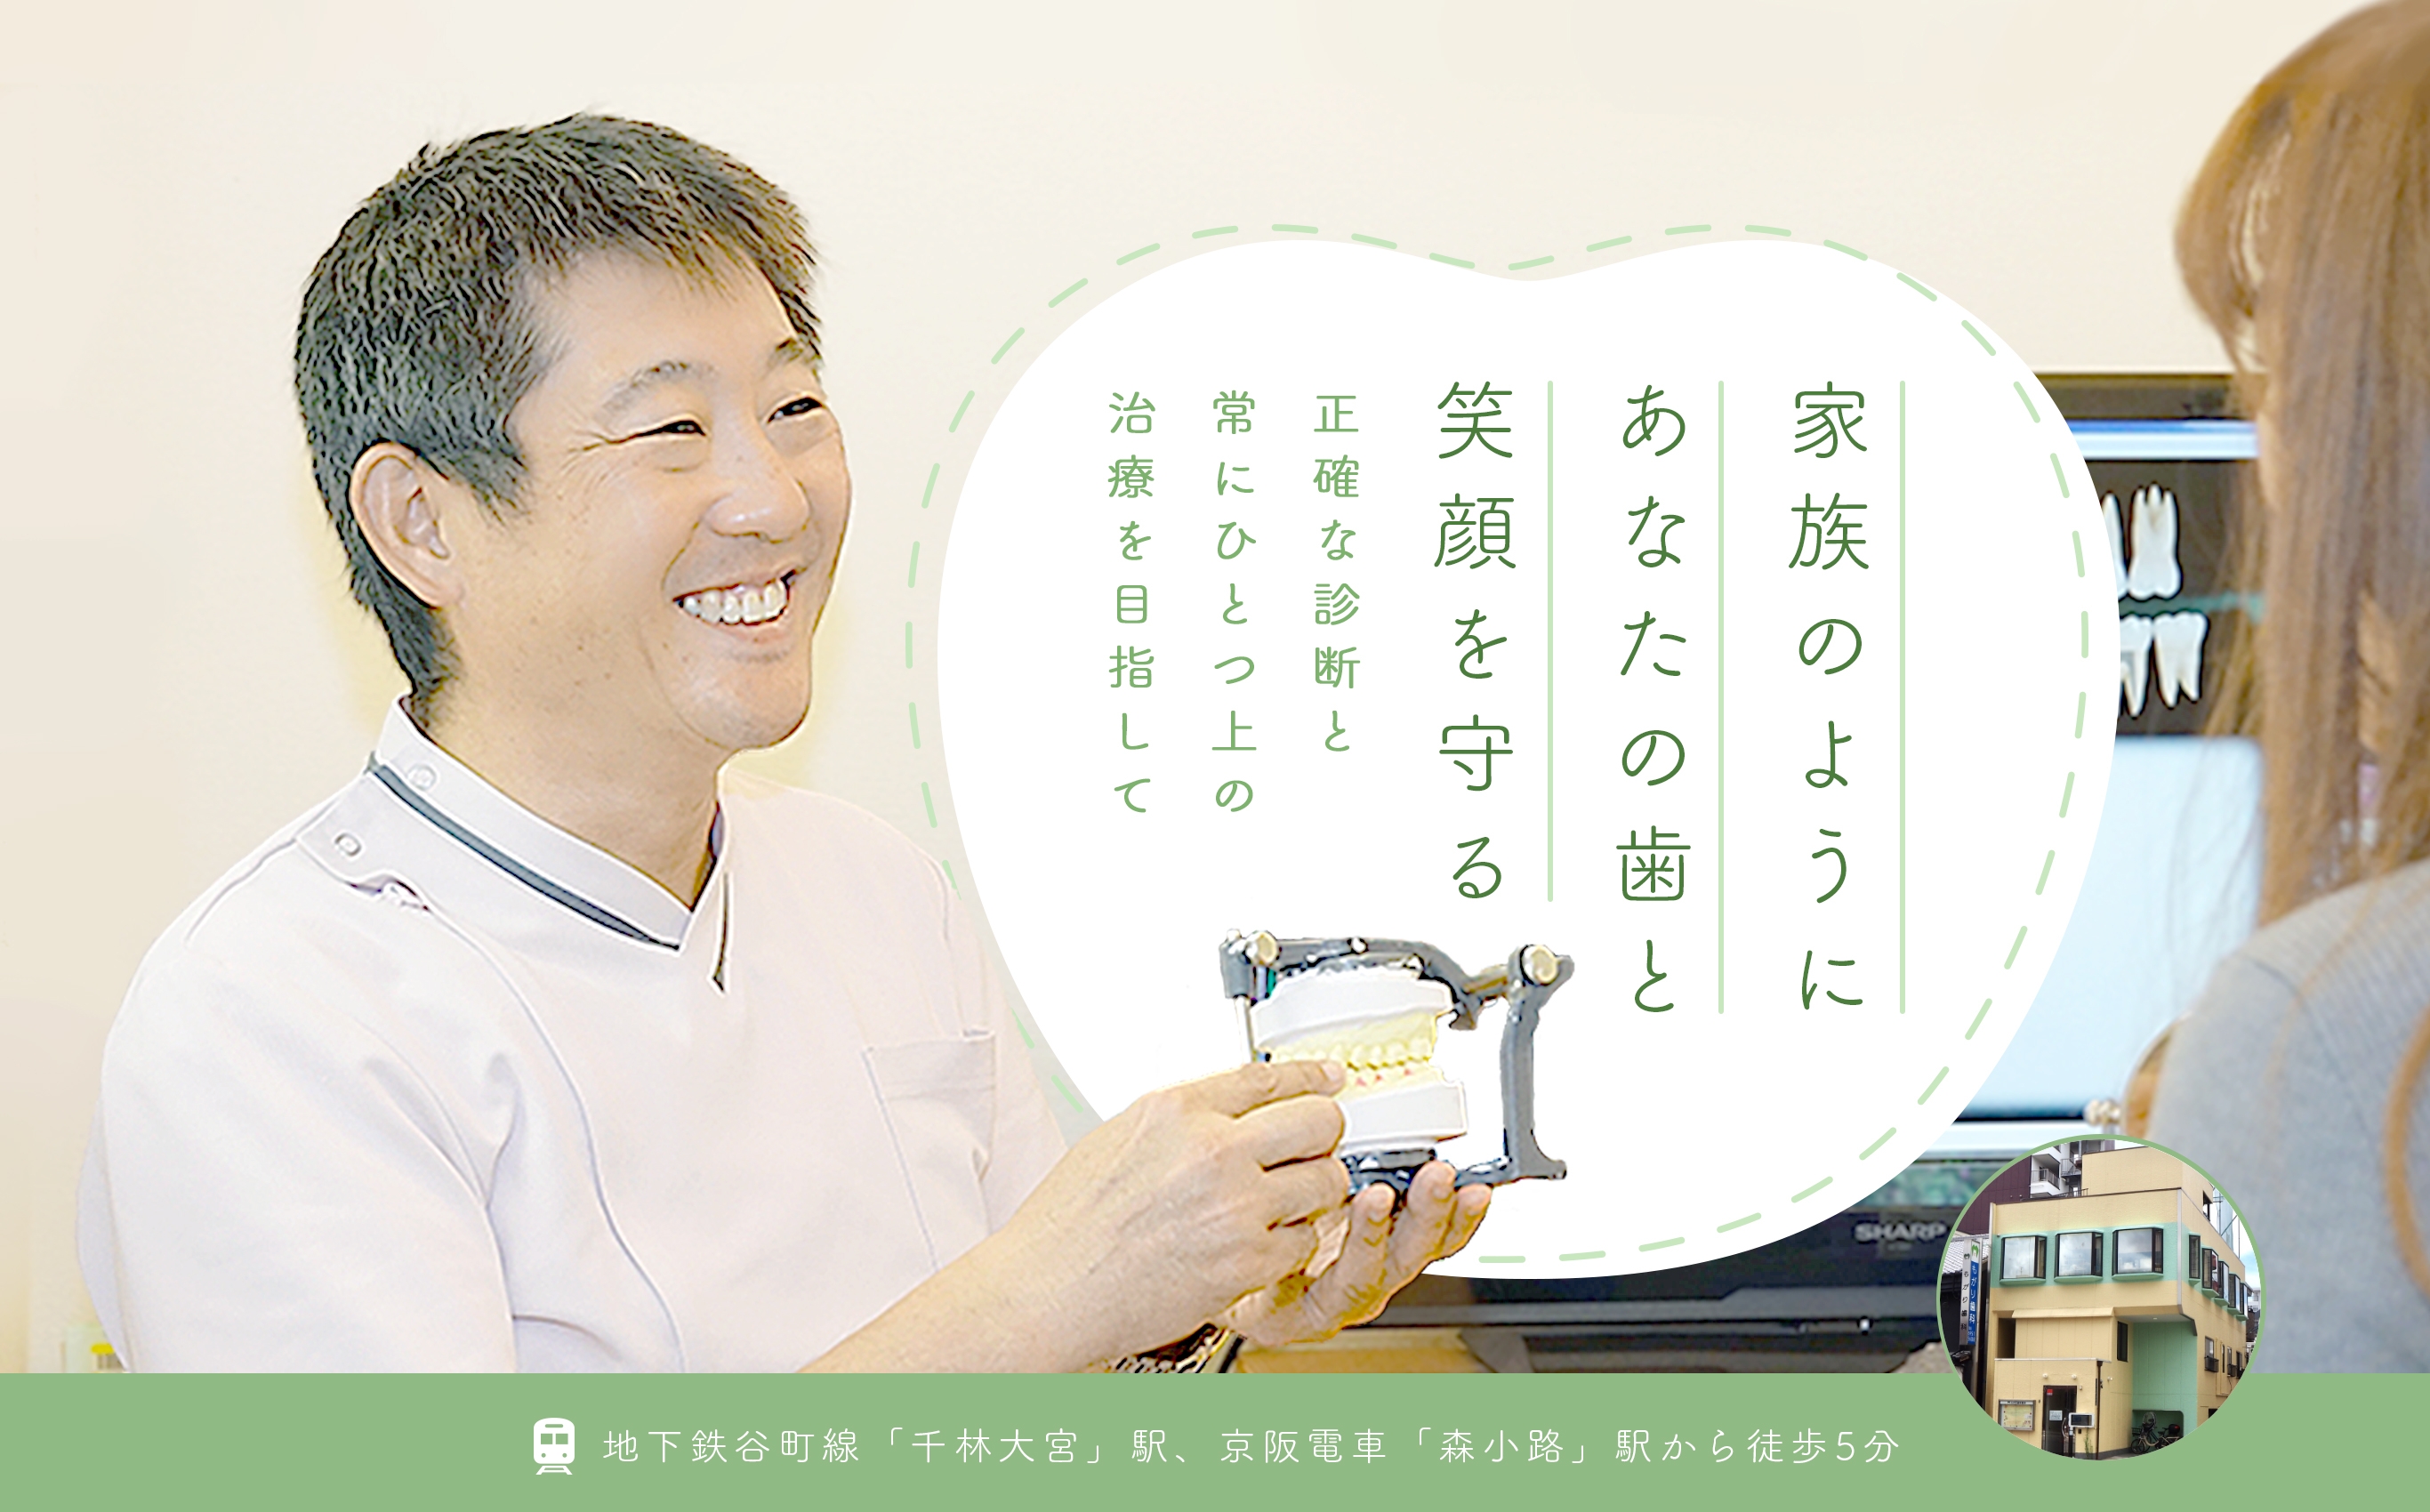 家族のようにあなたの歯と笑顔を守る 正確な診断と常にひとつ上の治療を目指して 地下鉄谷町線「千林大宮」駅、京阪電車「森小路」駅から徒歩5分